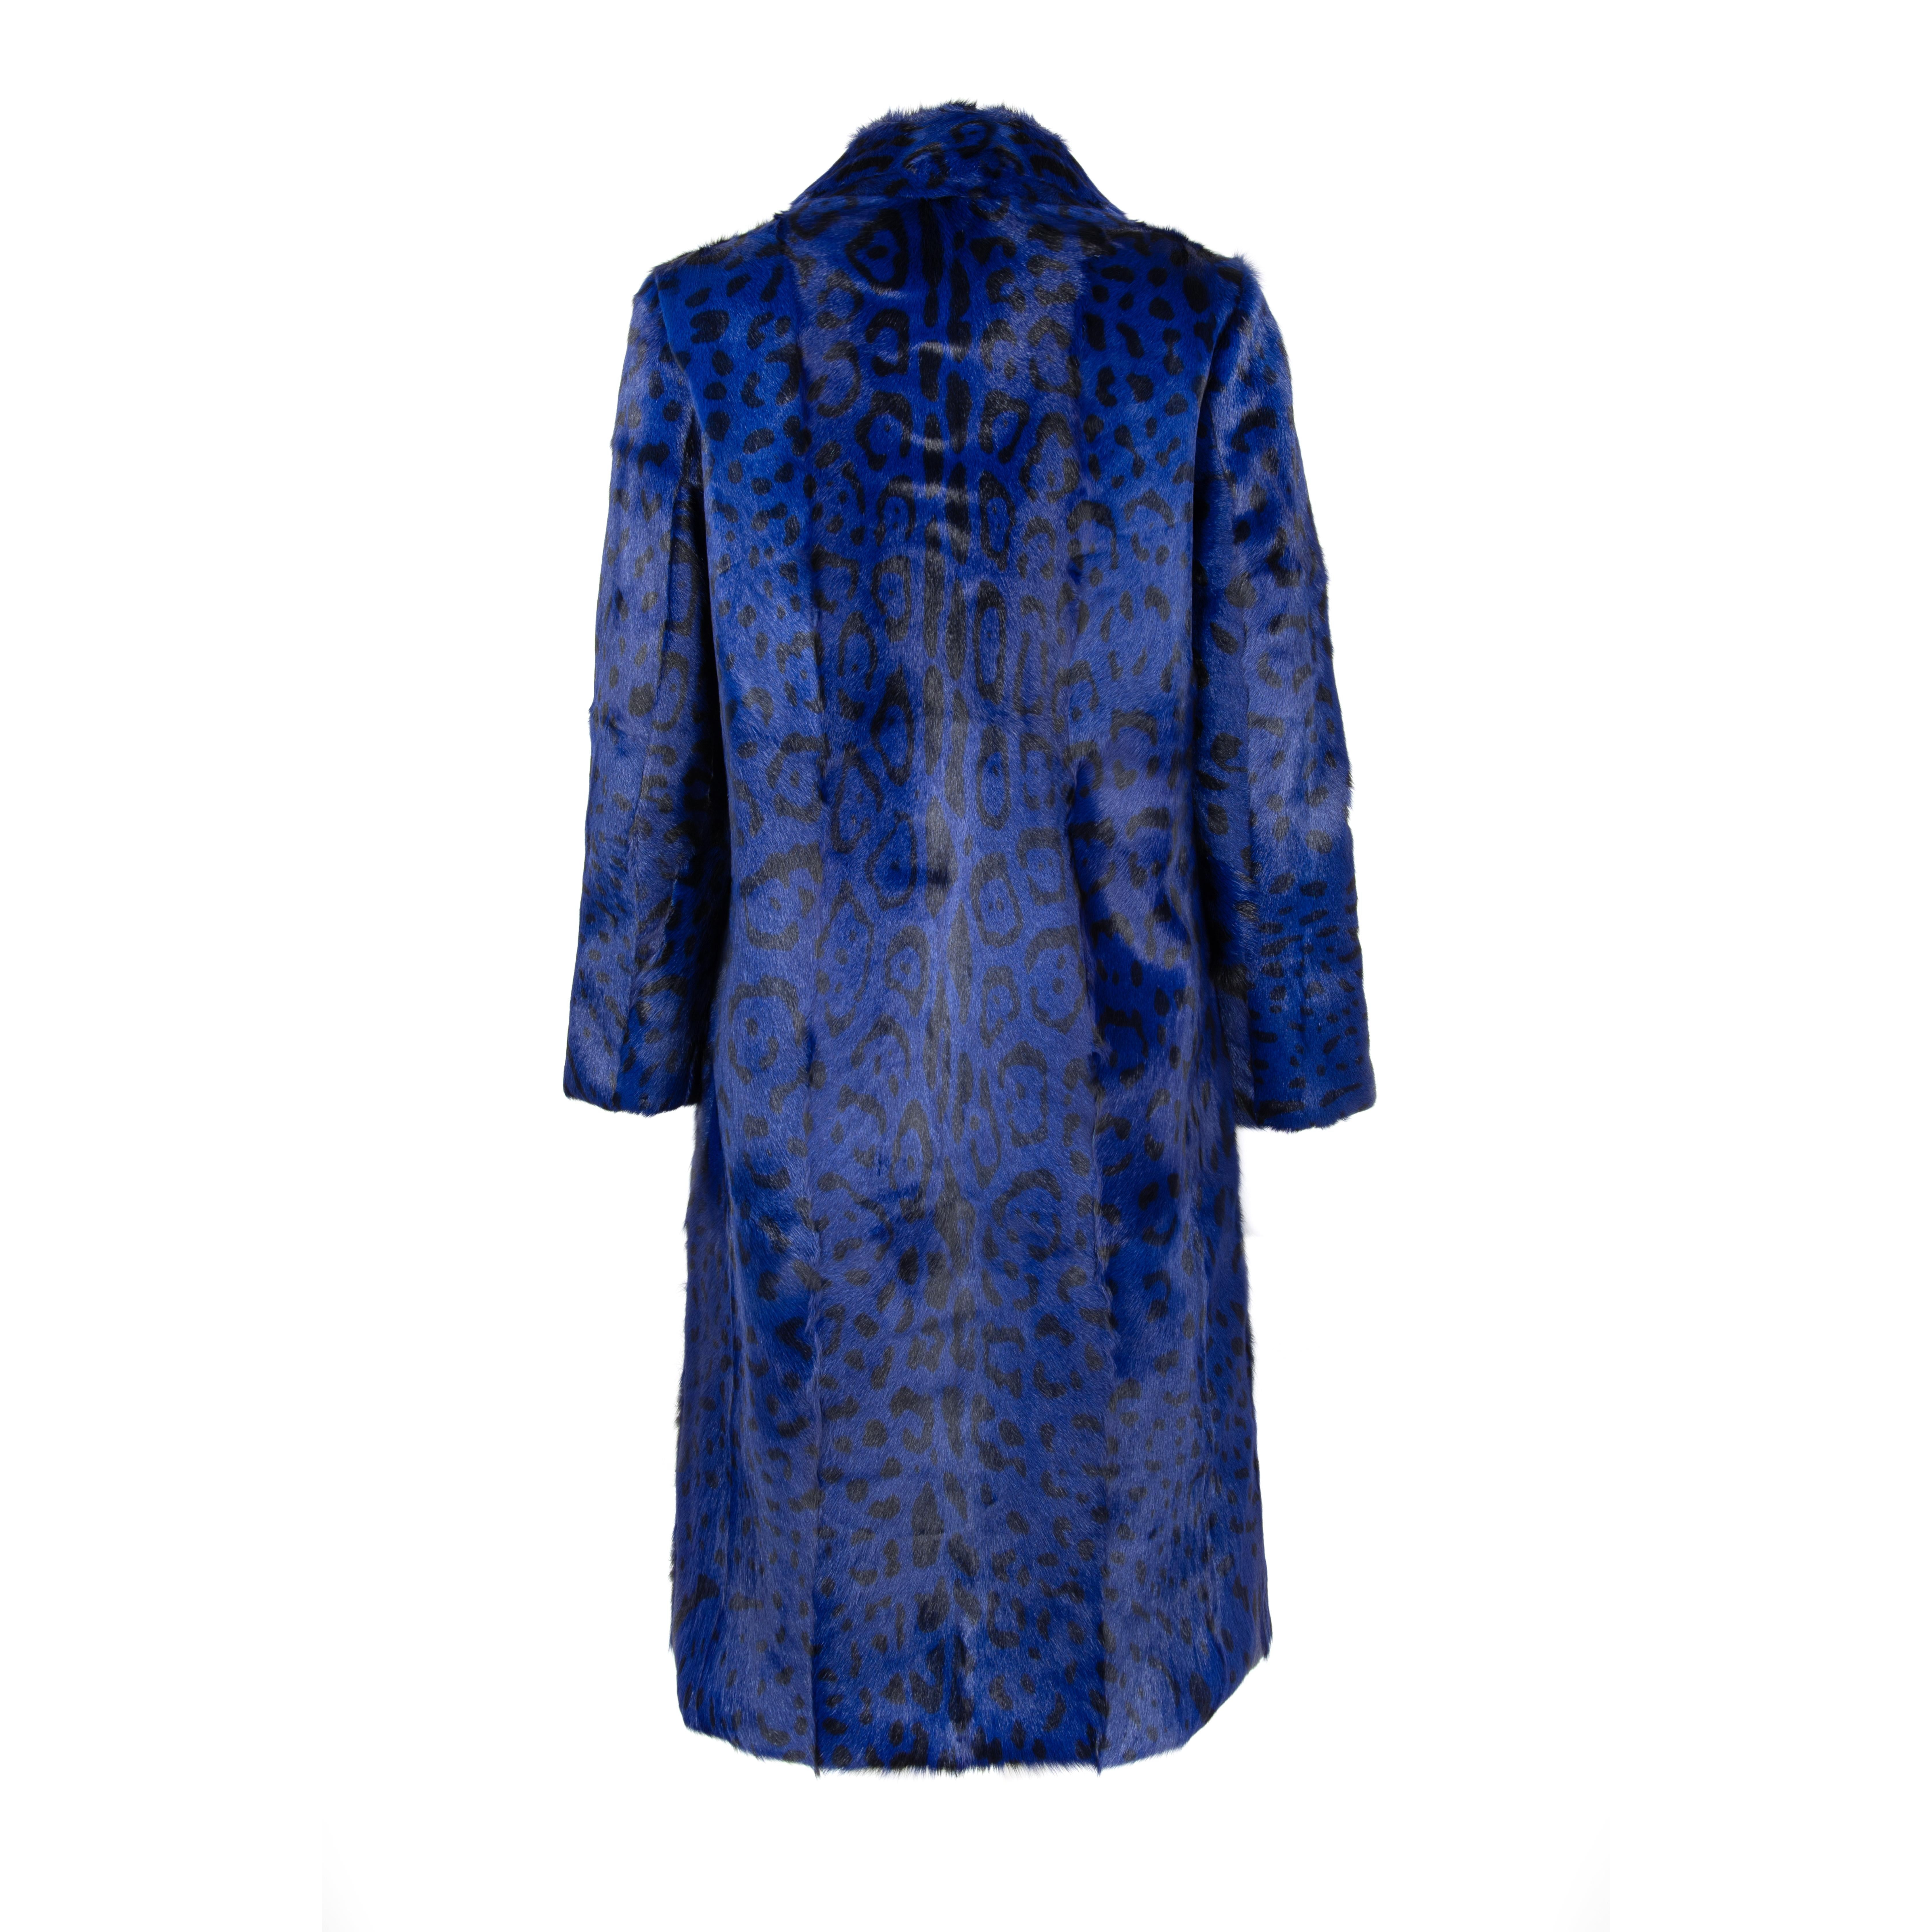 Women's Verheyen London Ink Blue Leopard Print Coat in Goat Hair Fur UK 10  For Sale